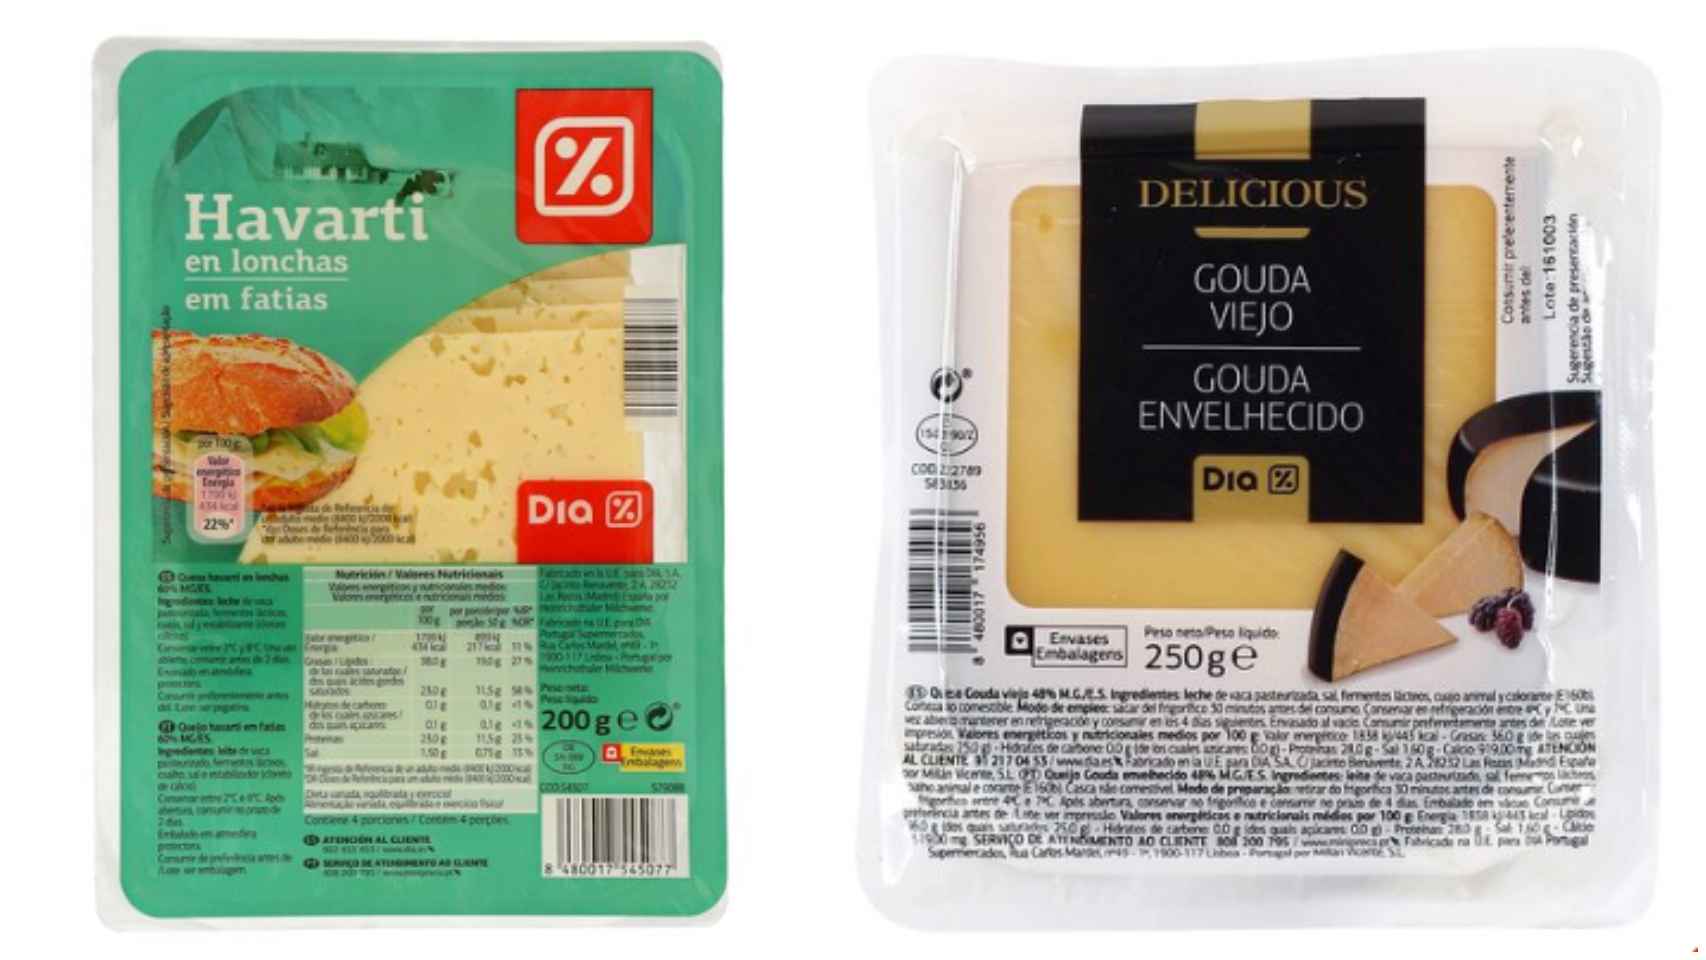 Dos tipos de queso de la marca blanca de Dia.